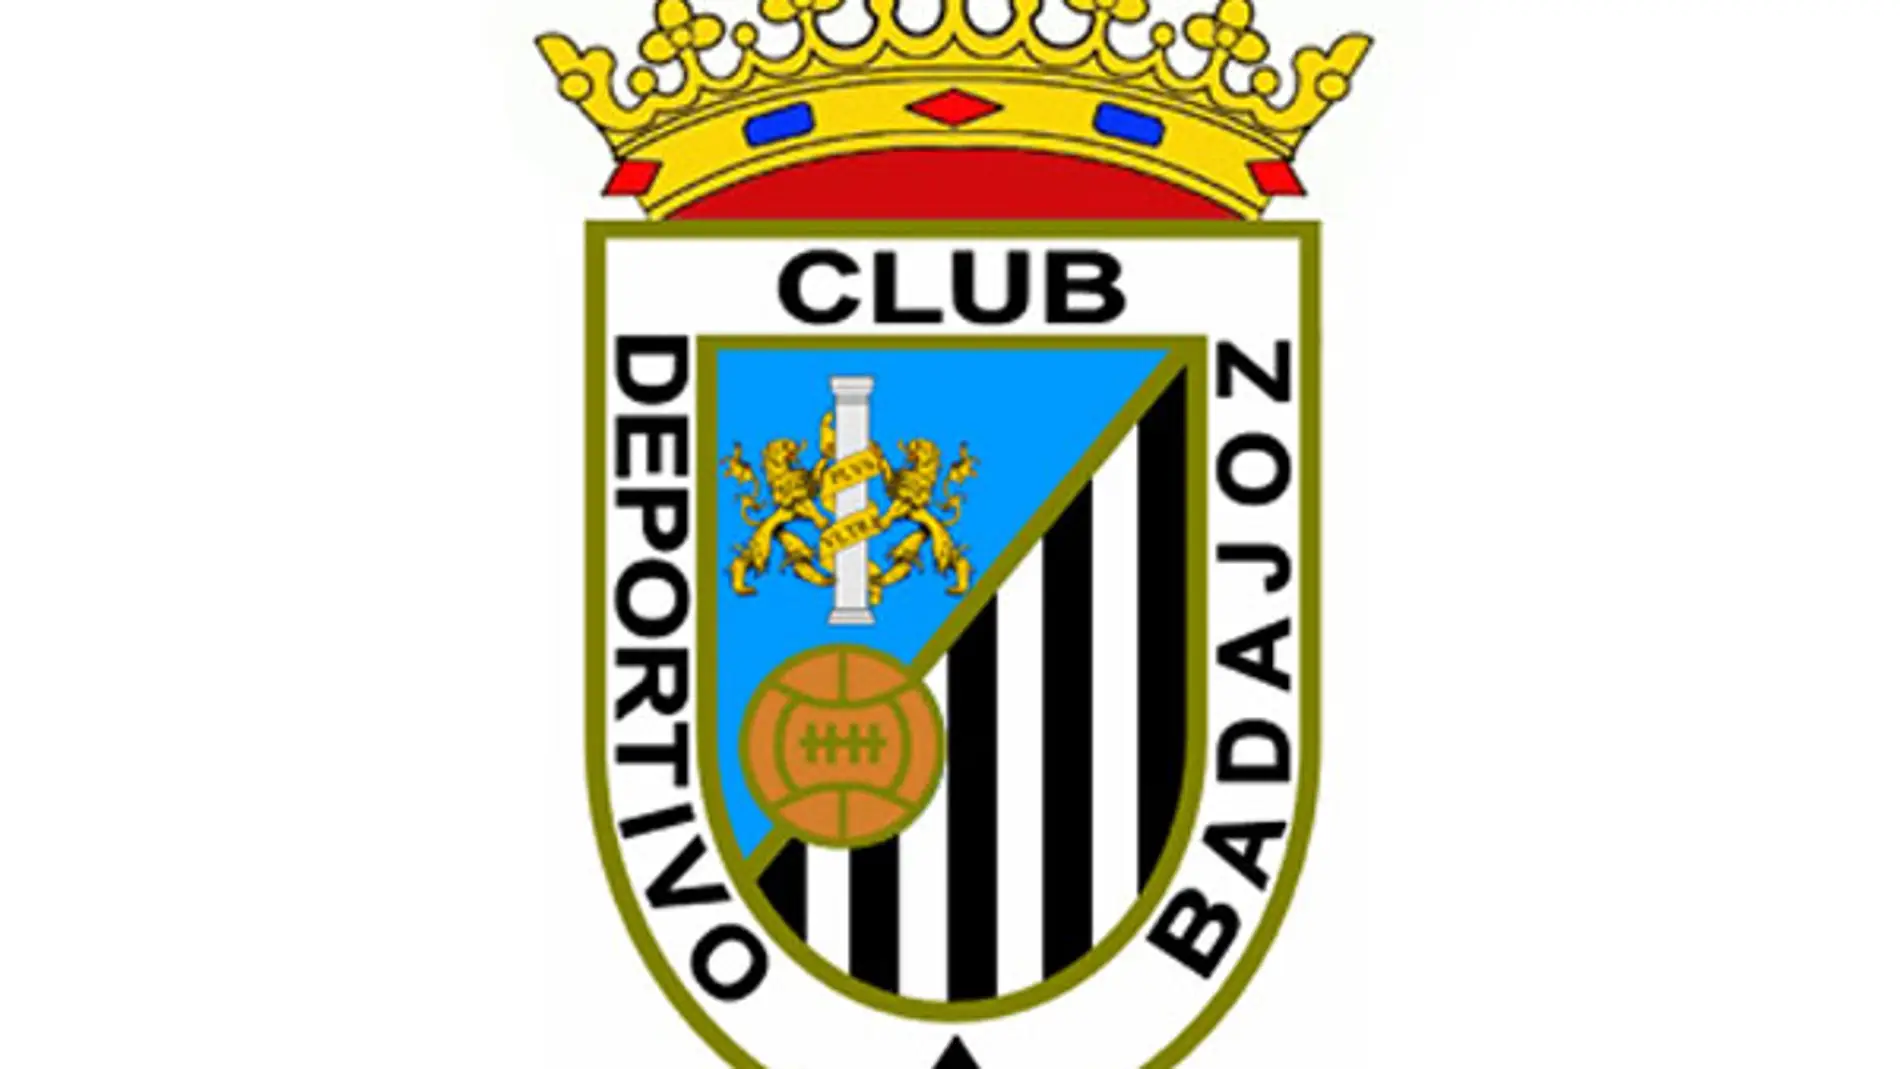 La propiedad del Club Deportivo Badajoz señala que la voluntad es vender su paquete mayoritario dentro de un proceso transparente y legal